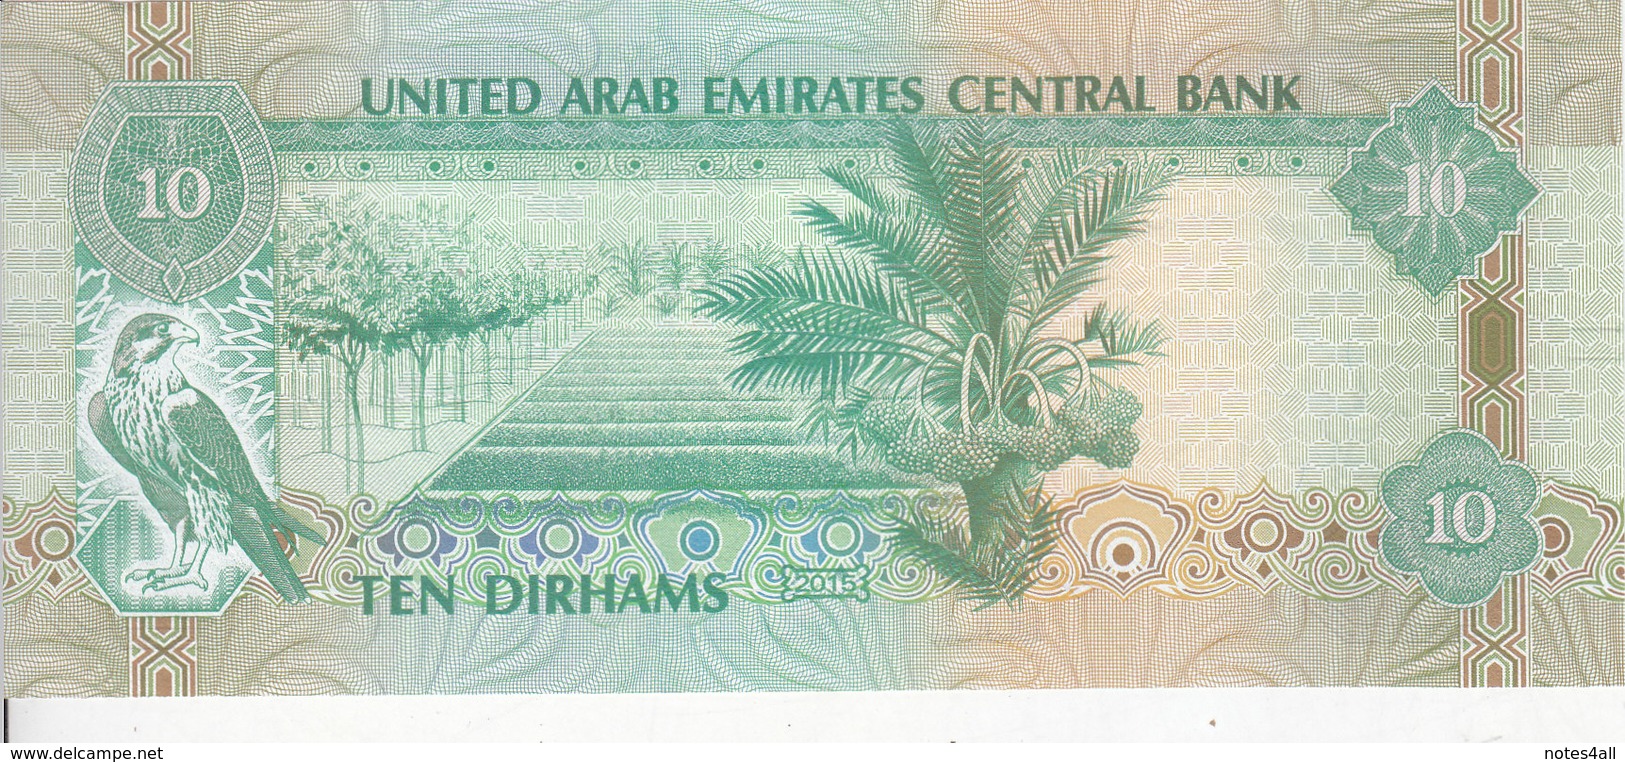 UAE UNITED ARAB EMIRATES 10 DIRHAMS 2015 P-27 UNC */* - Emirats Arabes Unis